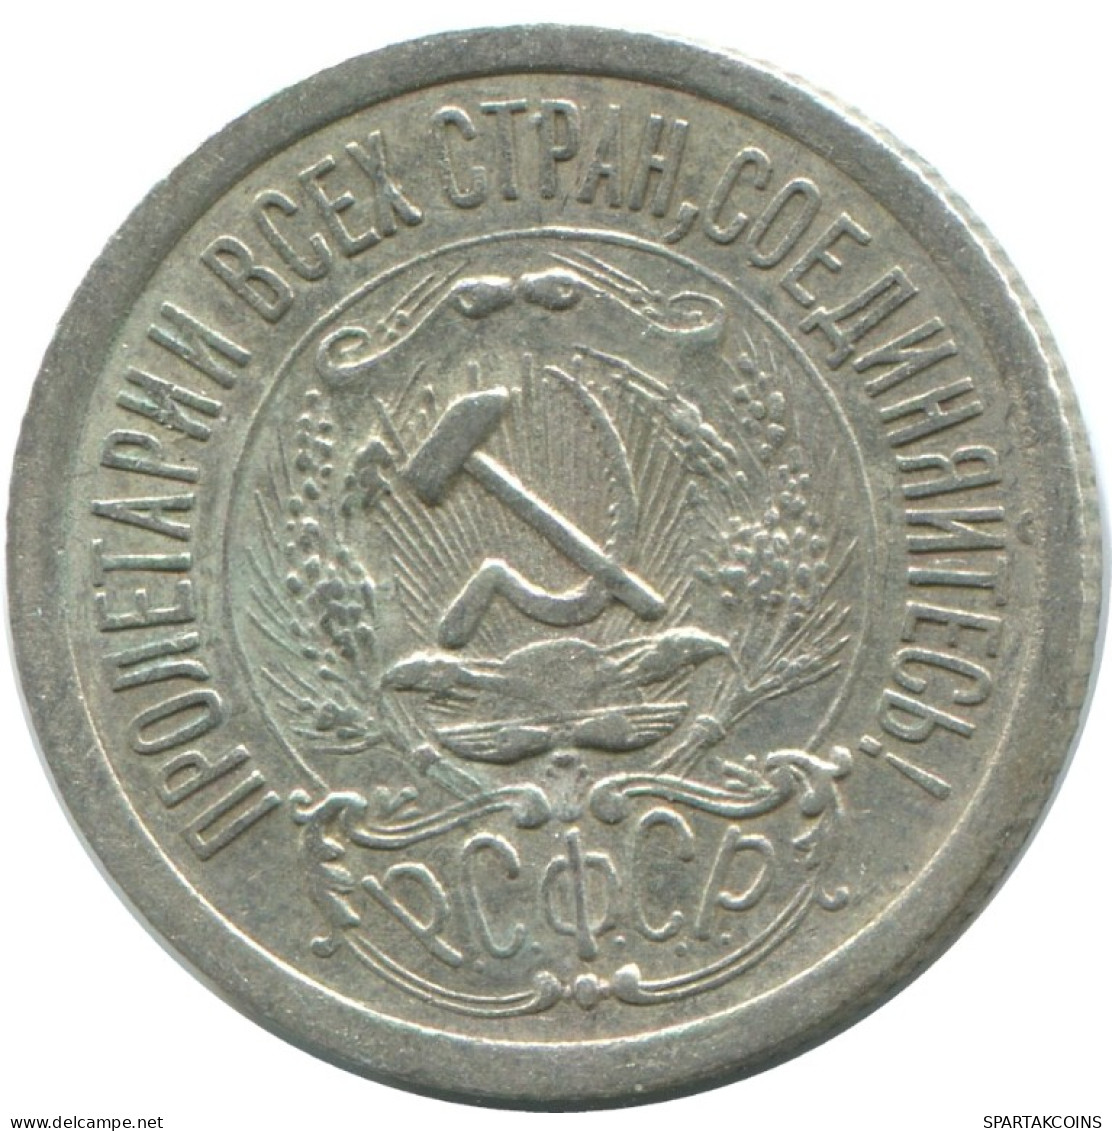 15 KOPEKS 1923 RUSSIA RSFSR SILVER Coin HIGH GRADE #AF103.4.U.A - Russland